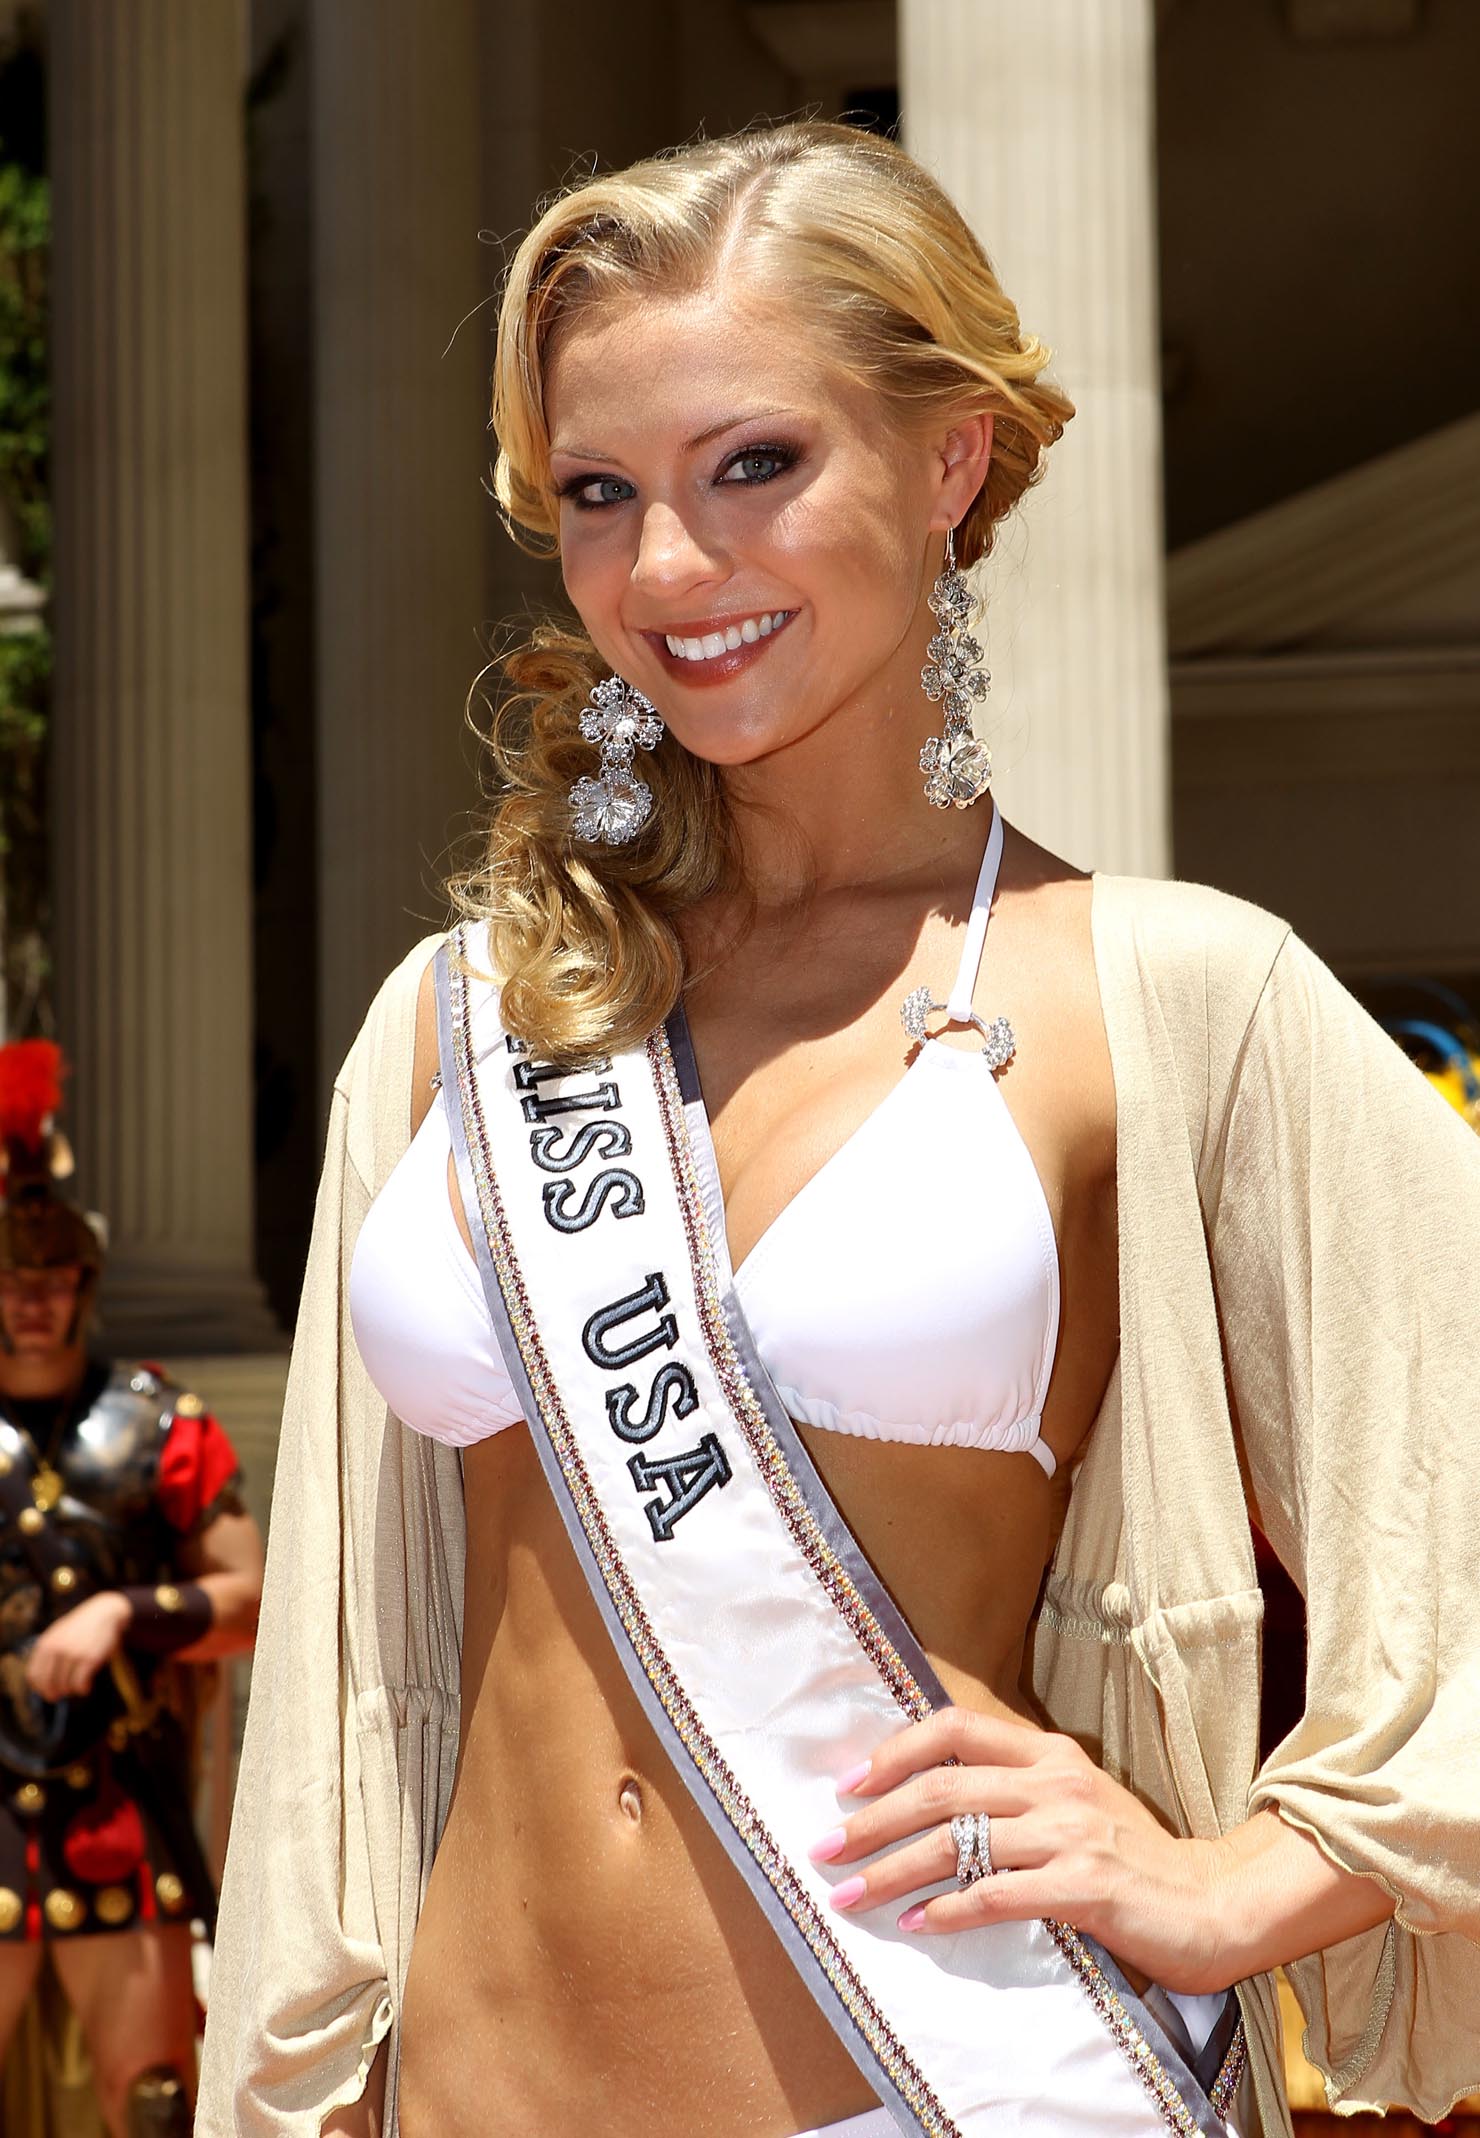 Miss USA Kristen Dalton